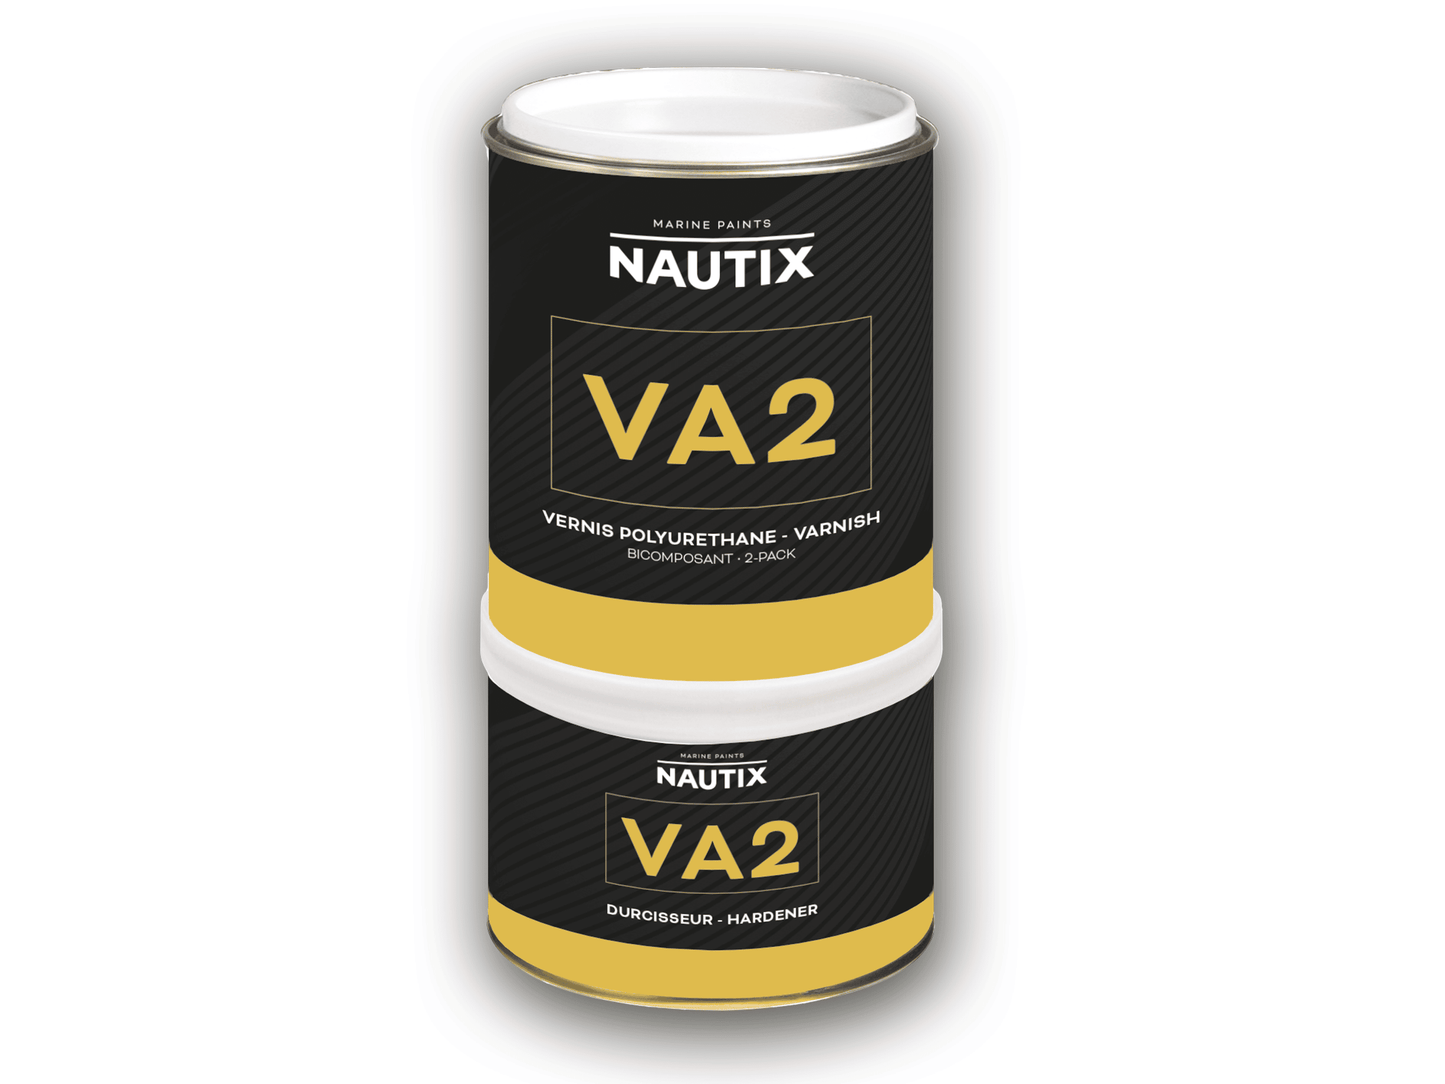 VA2 vernice poliuretanica bicomponente NAUTIX 0.75 lt